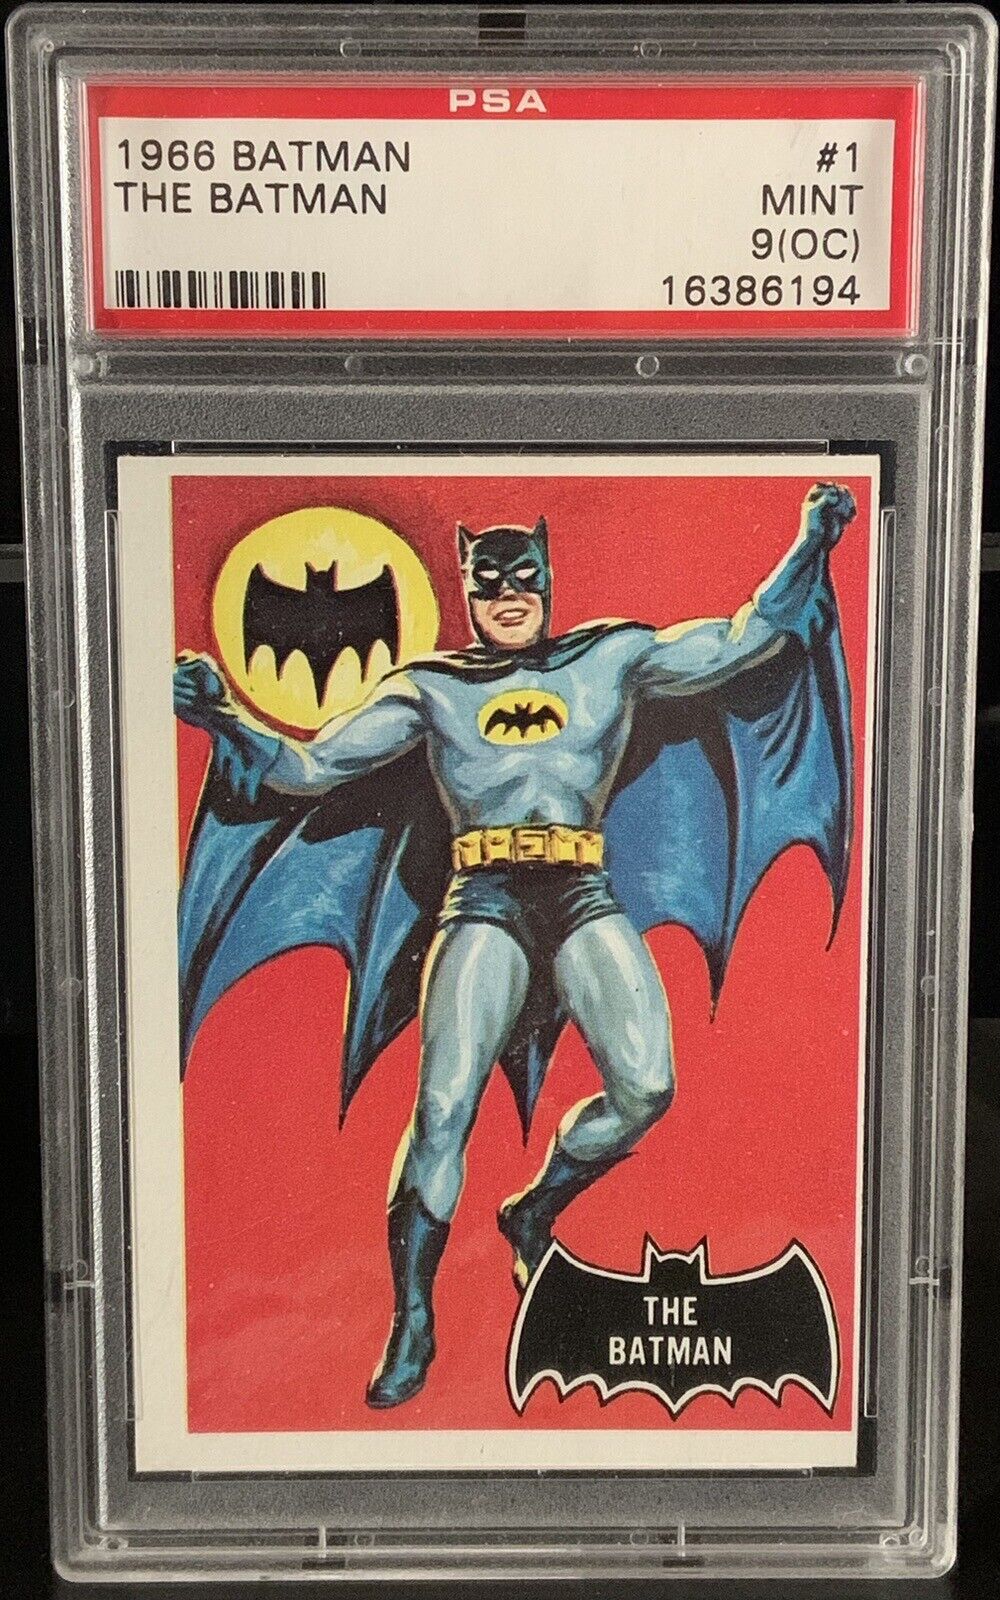 1966 THE BATMAN Batman #1 PSA 9 OC RARE HIGH GRADE